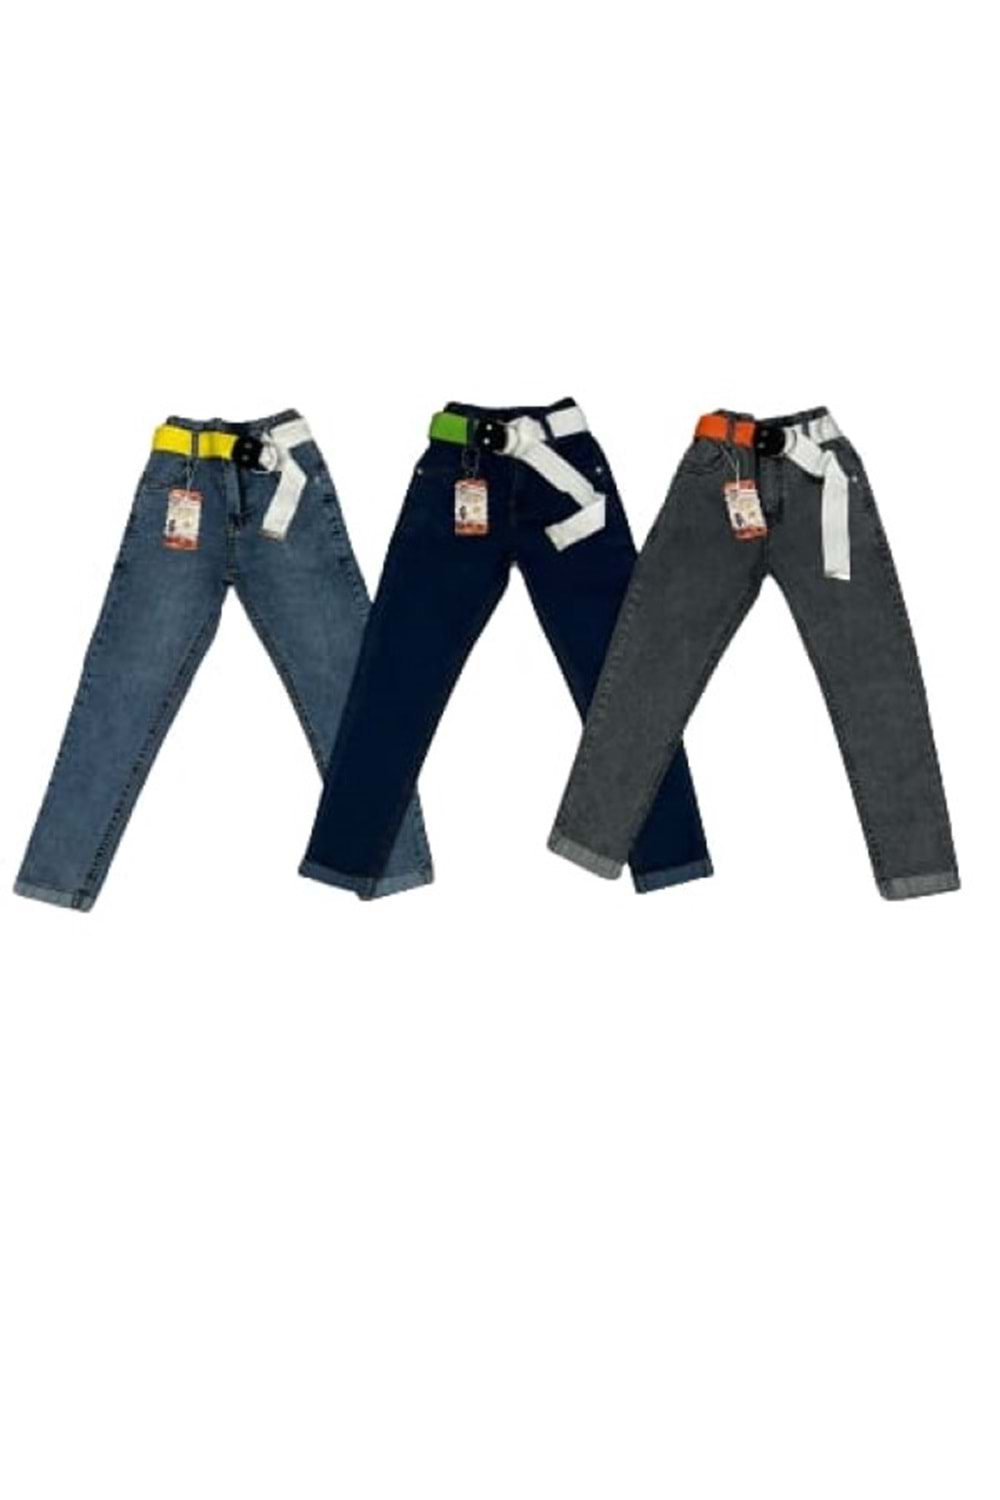 Miya 8110 Çocuk Kız Fosfor Kemeri Lastikli Kot Pantolon - Açık Mavi - ST00101-Açık Mavi-14 YAŞ